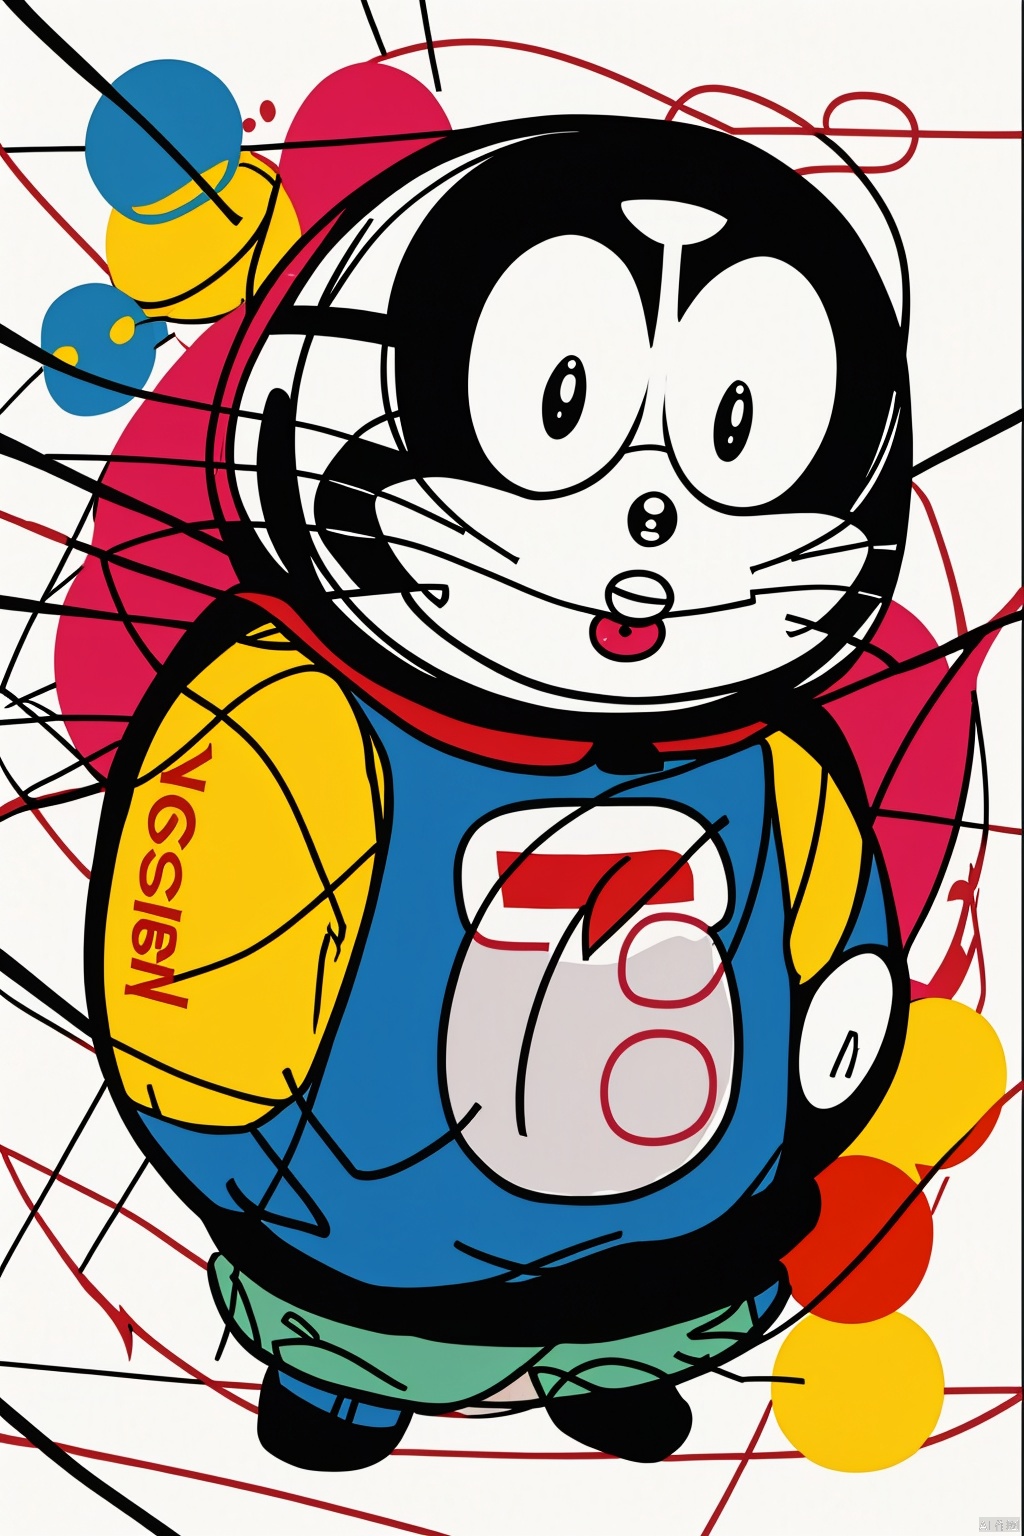  Doraemon,Clutteredlines,, Cluttered lines